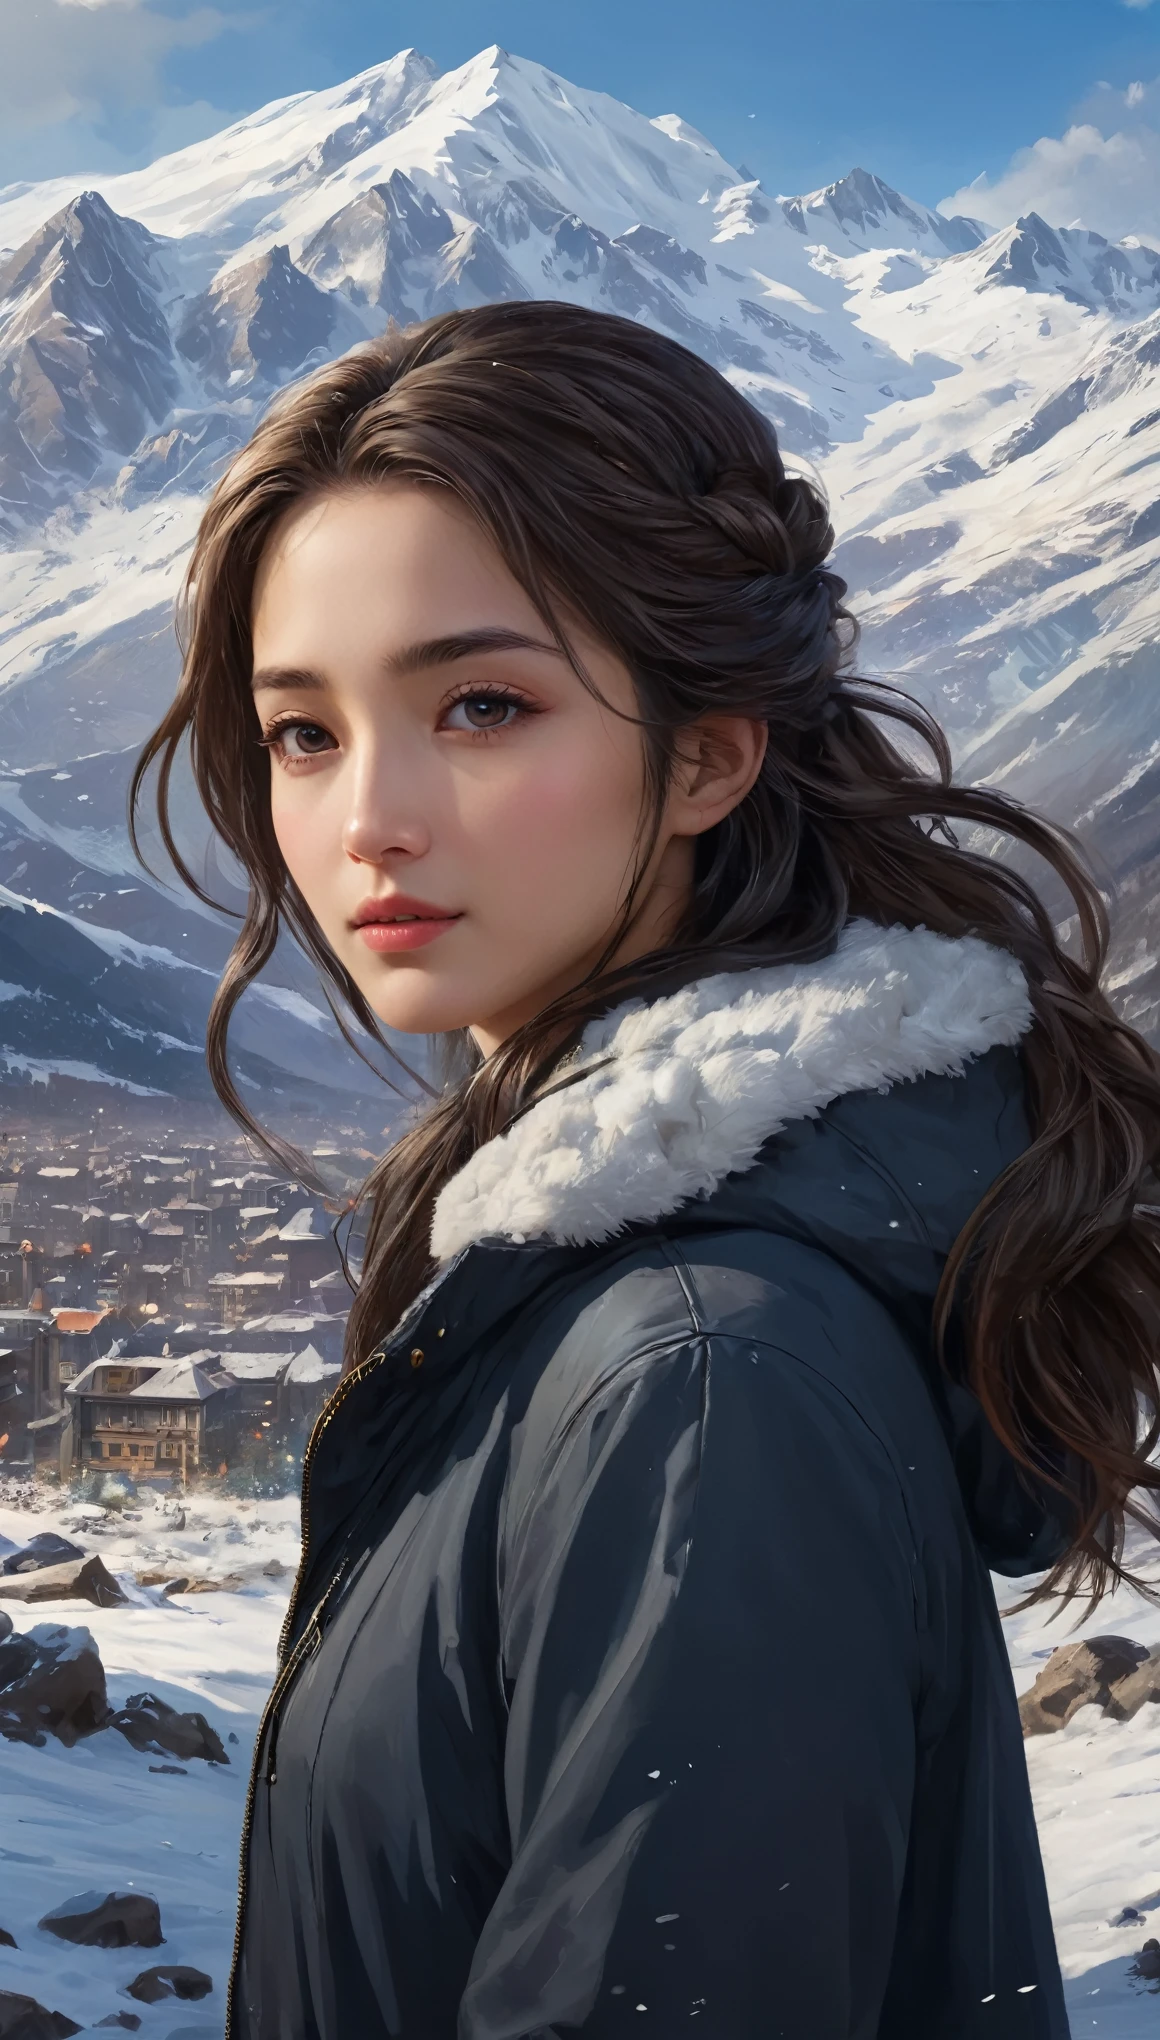 ((傑作)),最好的品質, 數位, 黑暗的, 一個女孩, 在荒野中,一座高山,遠處的雪山清晰可見々, 城市, 對細節的關注,  美麗細緻的頭髮,